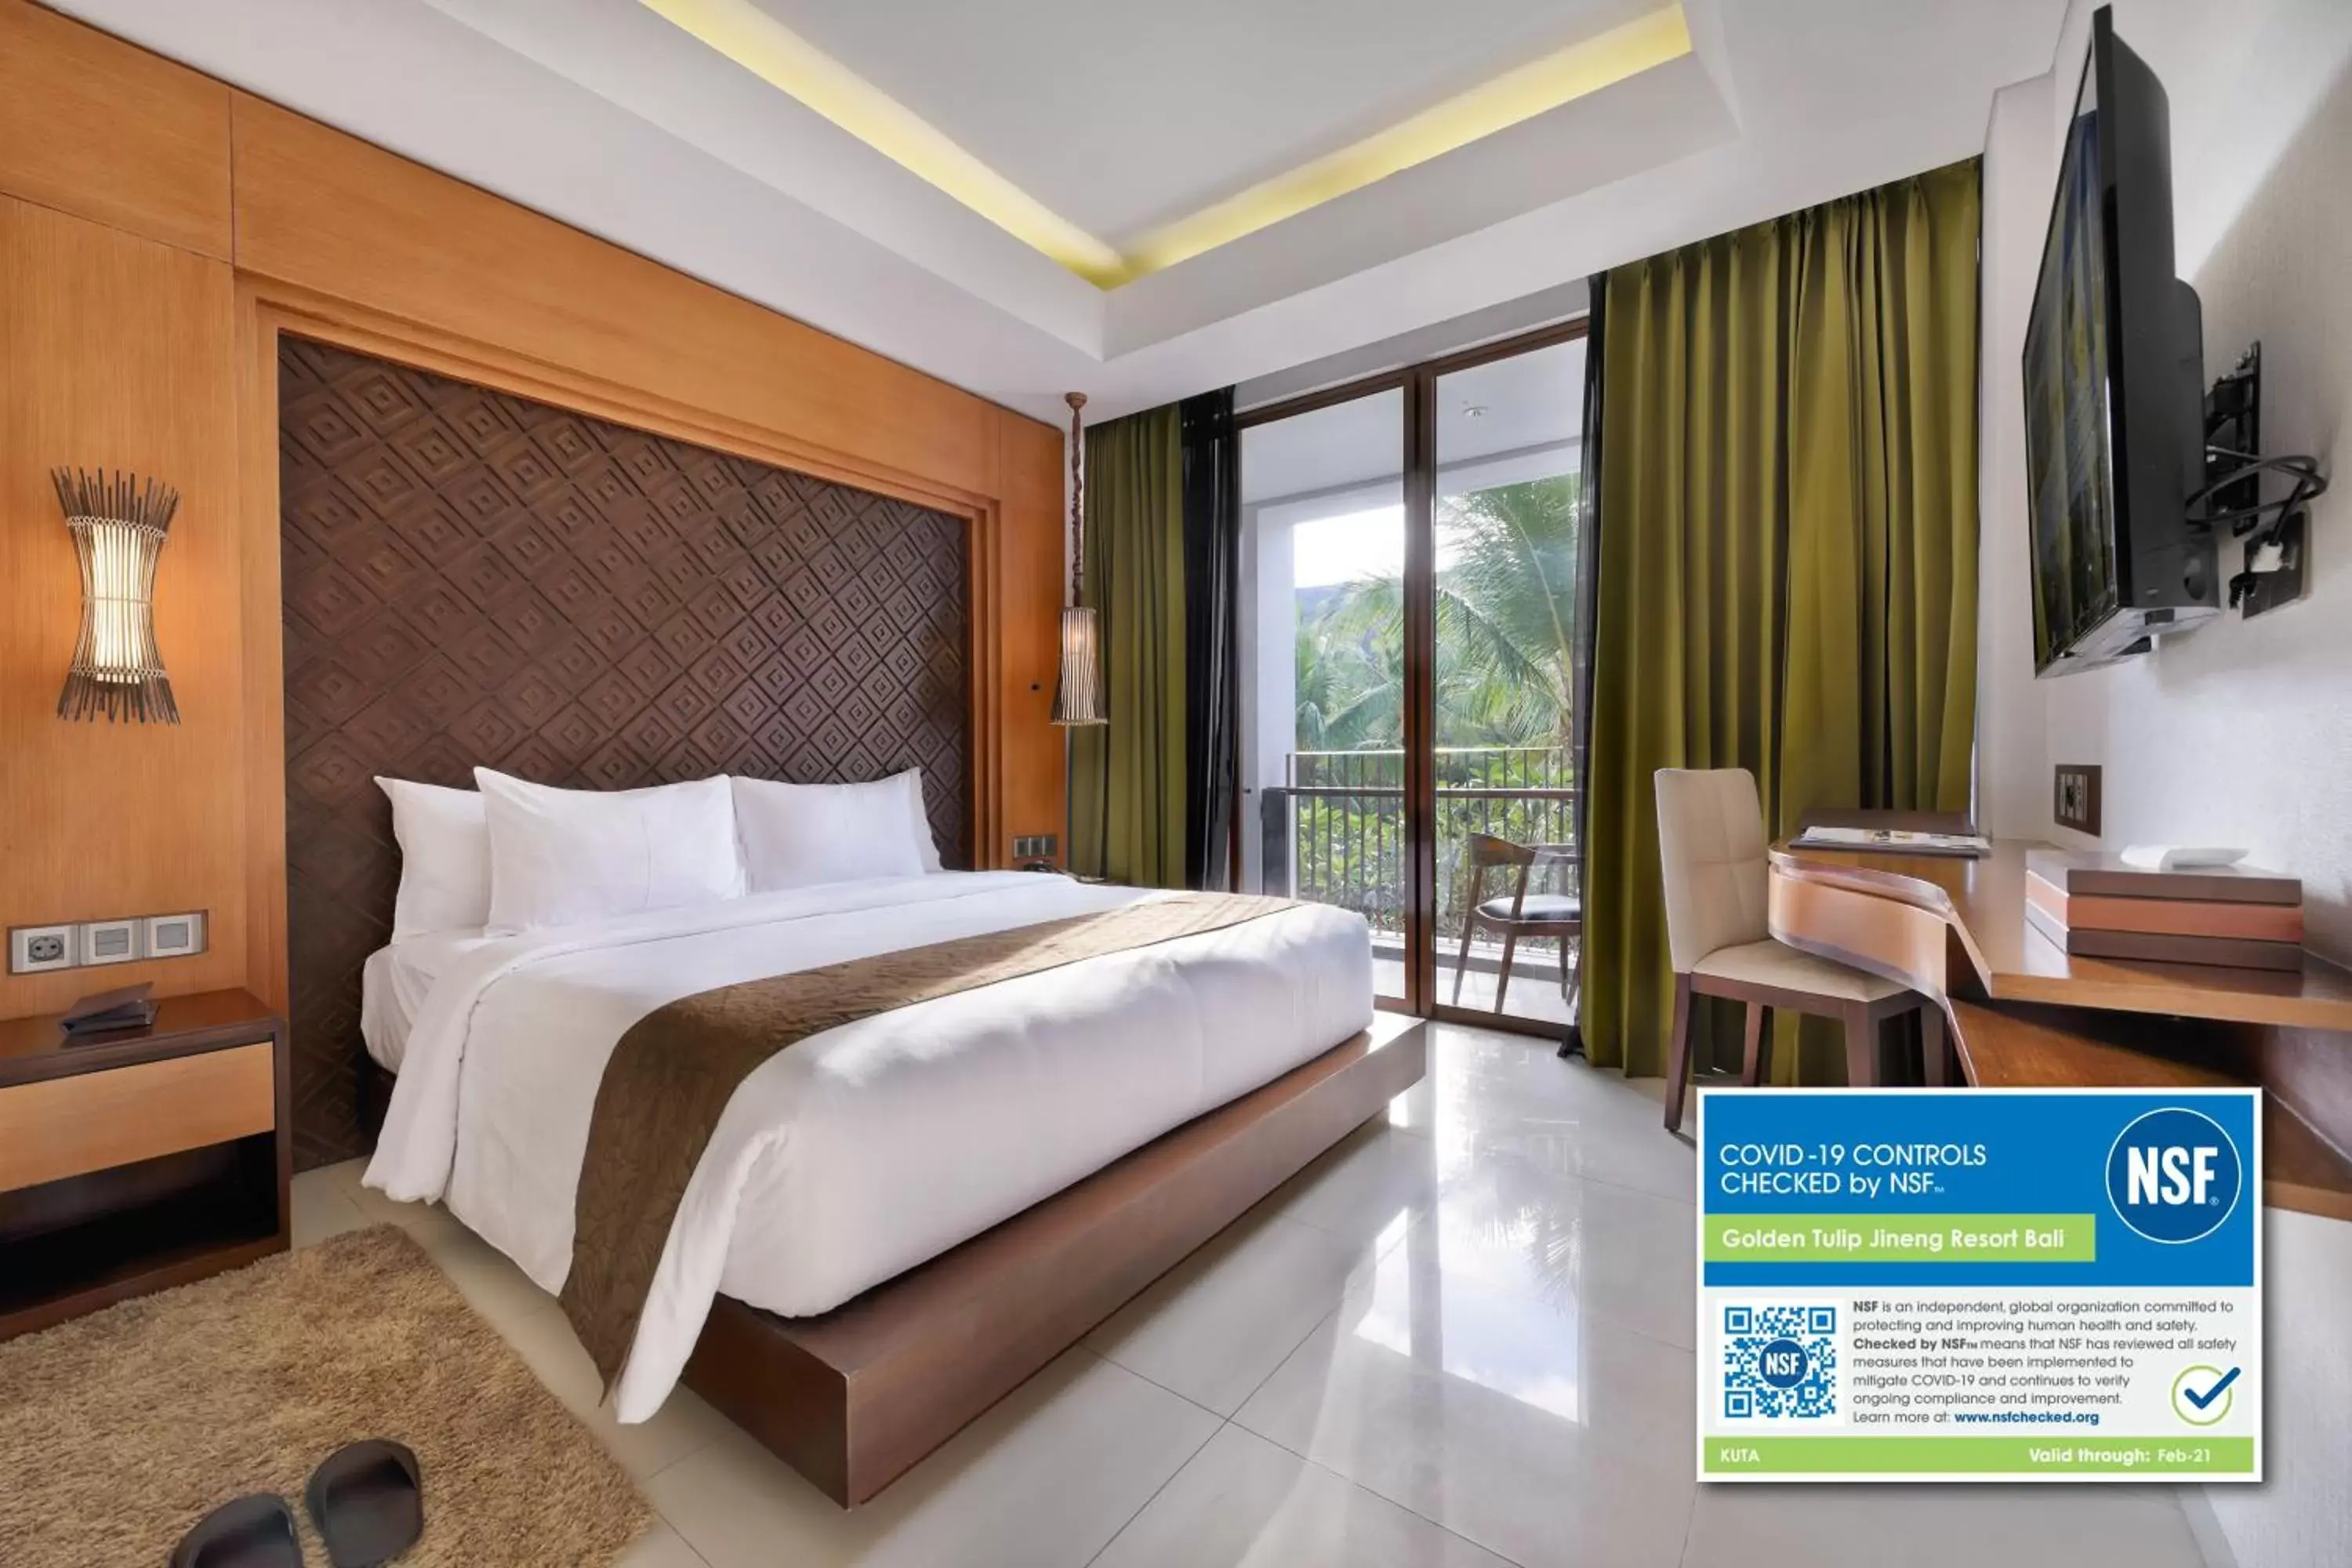 Bedroom, Room Photo in Golden Tulip Jineng Resort Bali